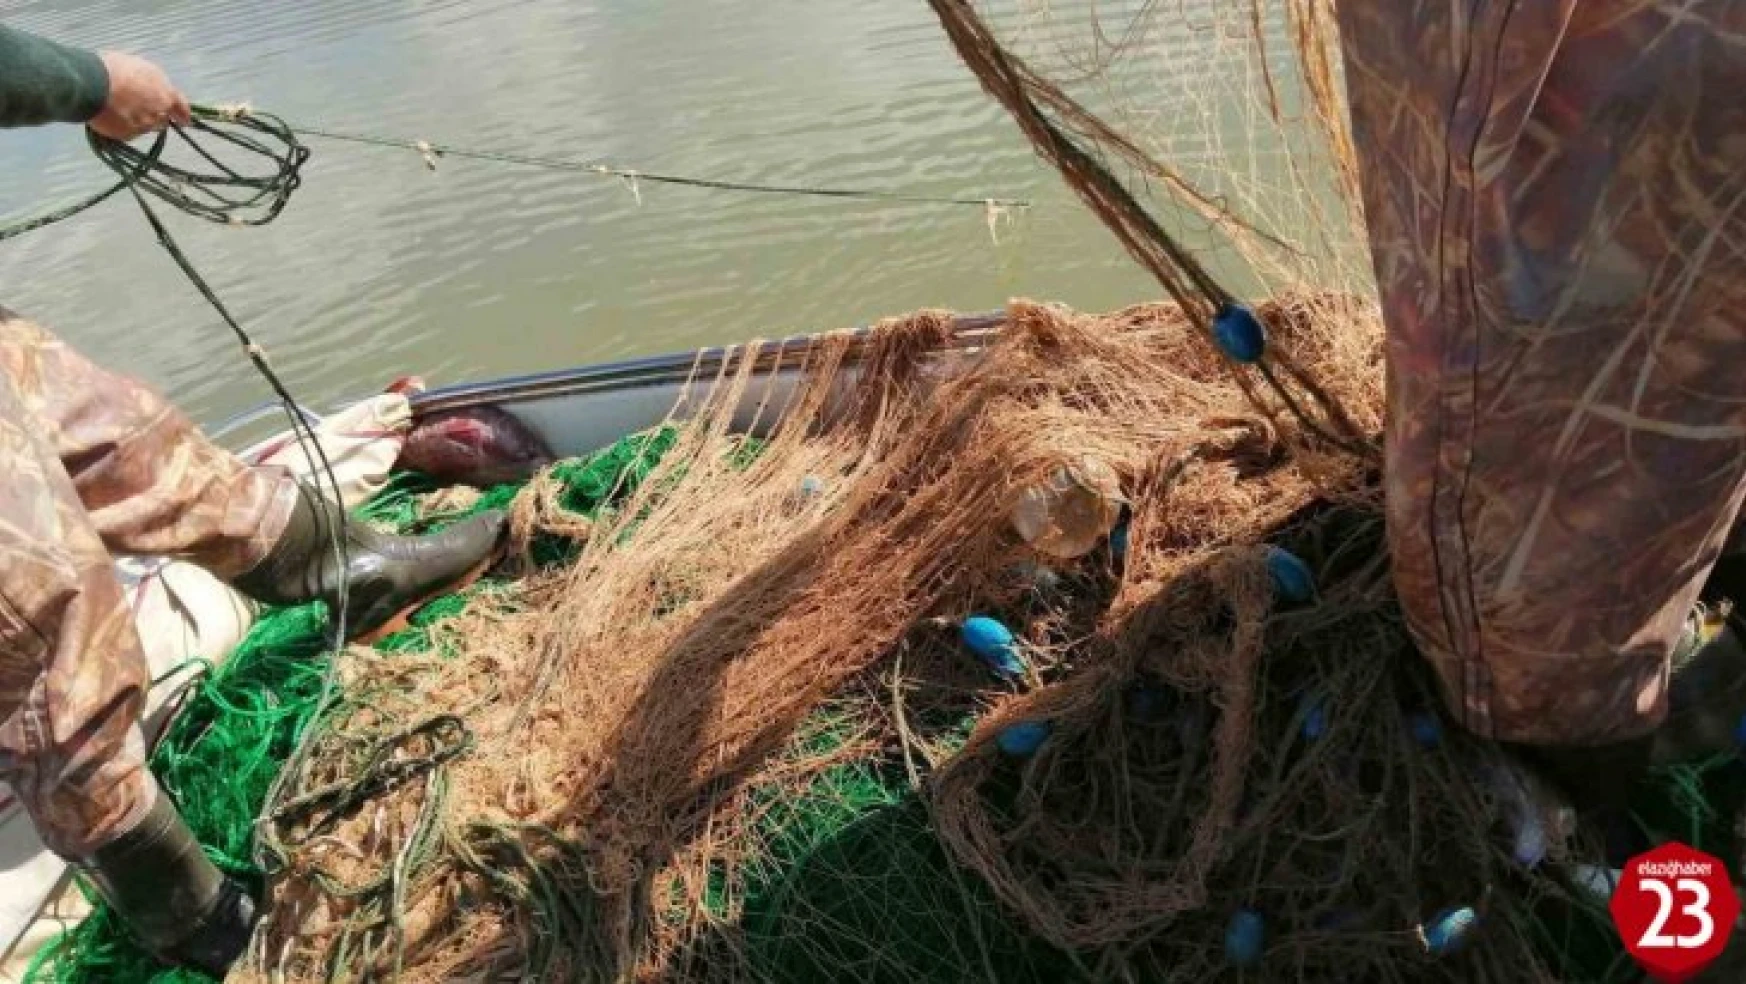 Elazığ'da kaçak avlandığı tespit edilen 100 kilo canlı balık ele geçirildi